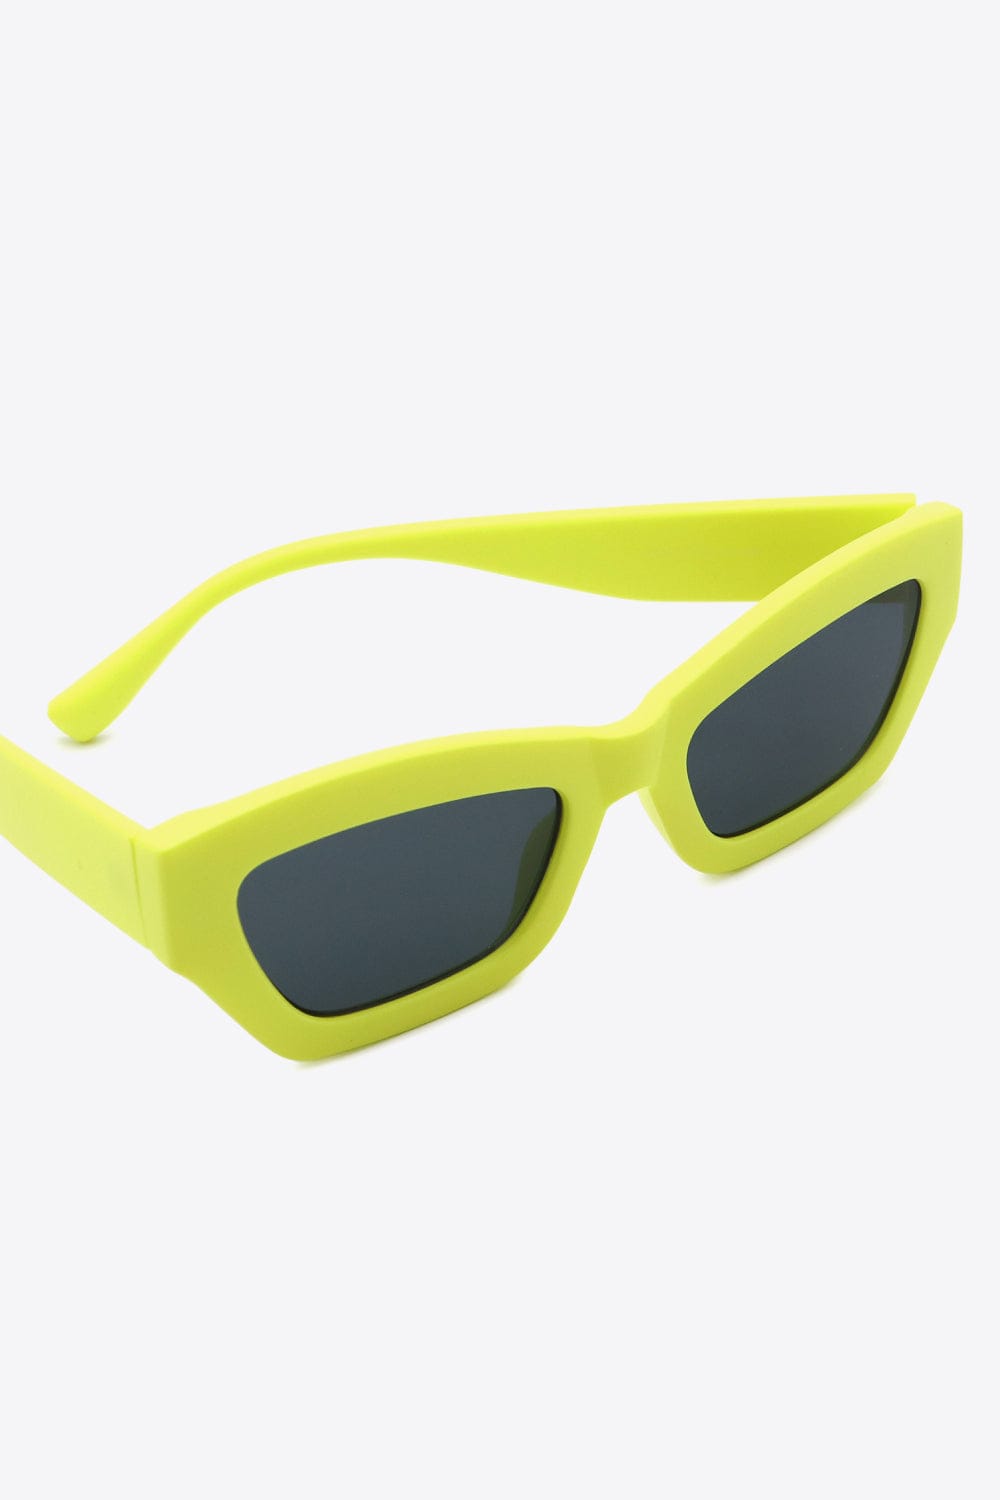 Classic UV400 Polycarbonate Frame Sunglasses - Body By J'ne